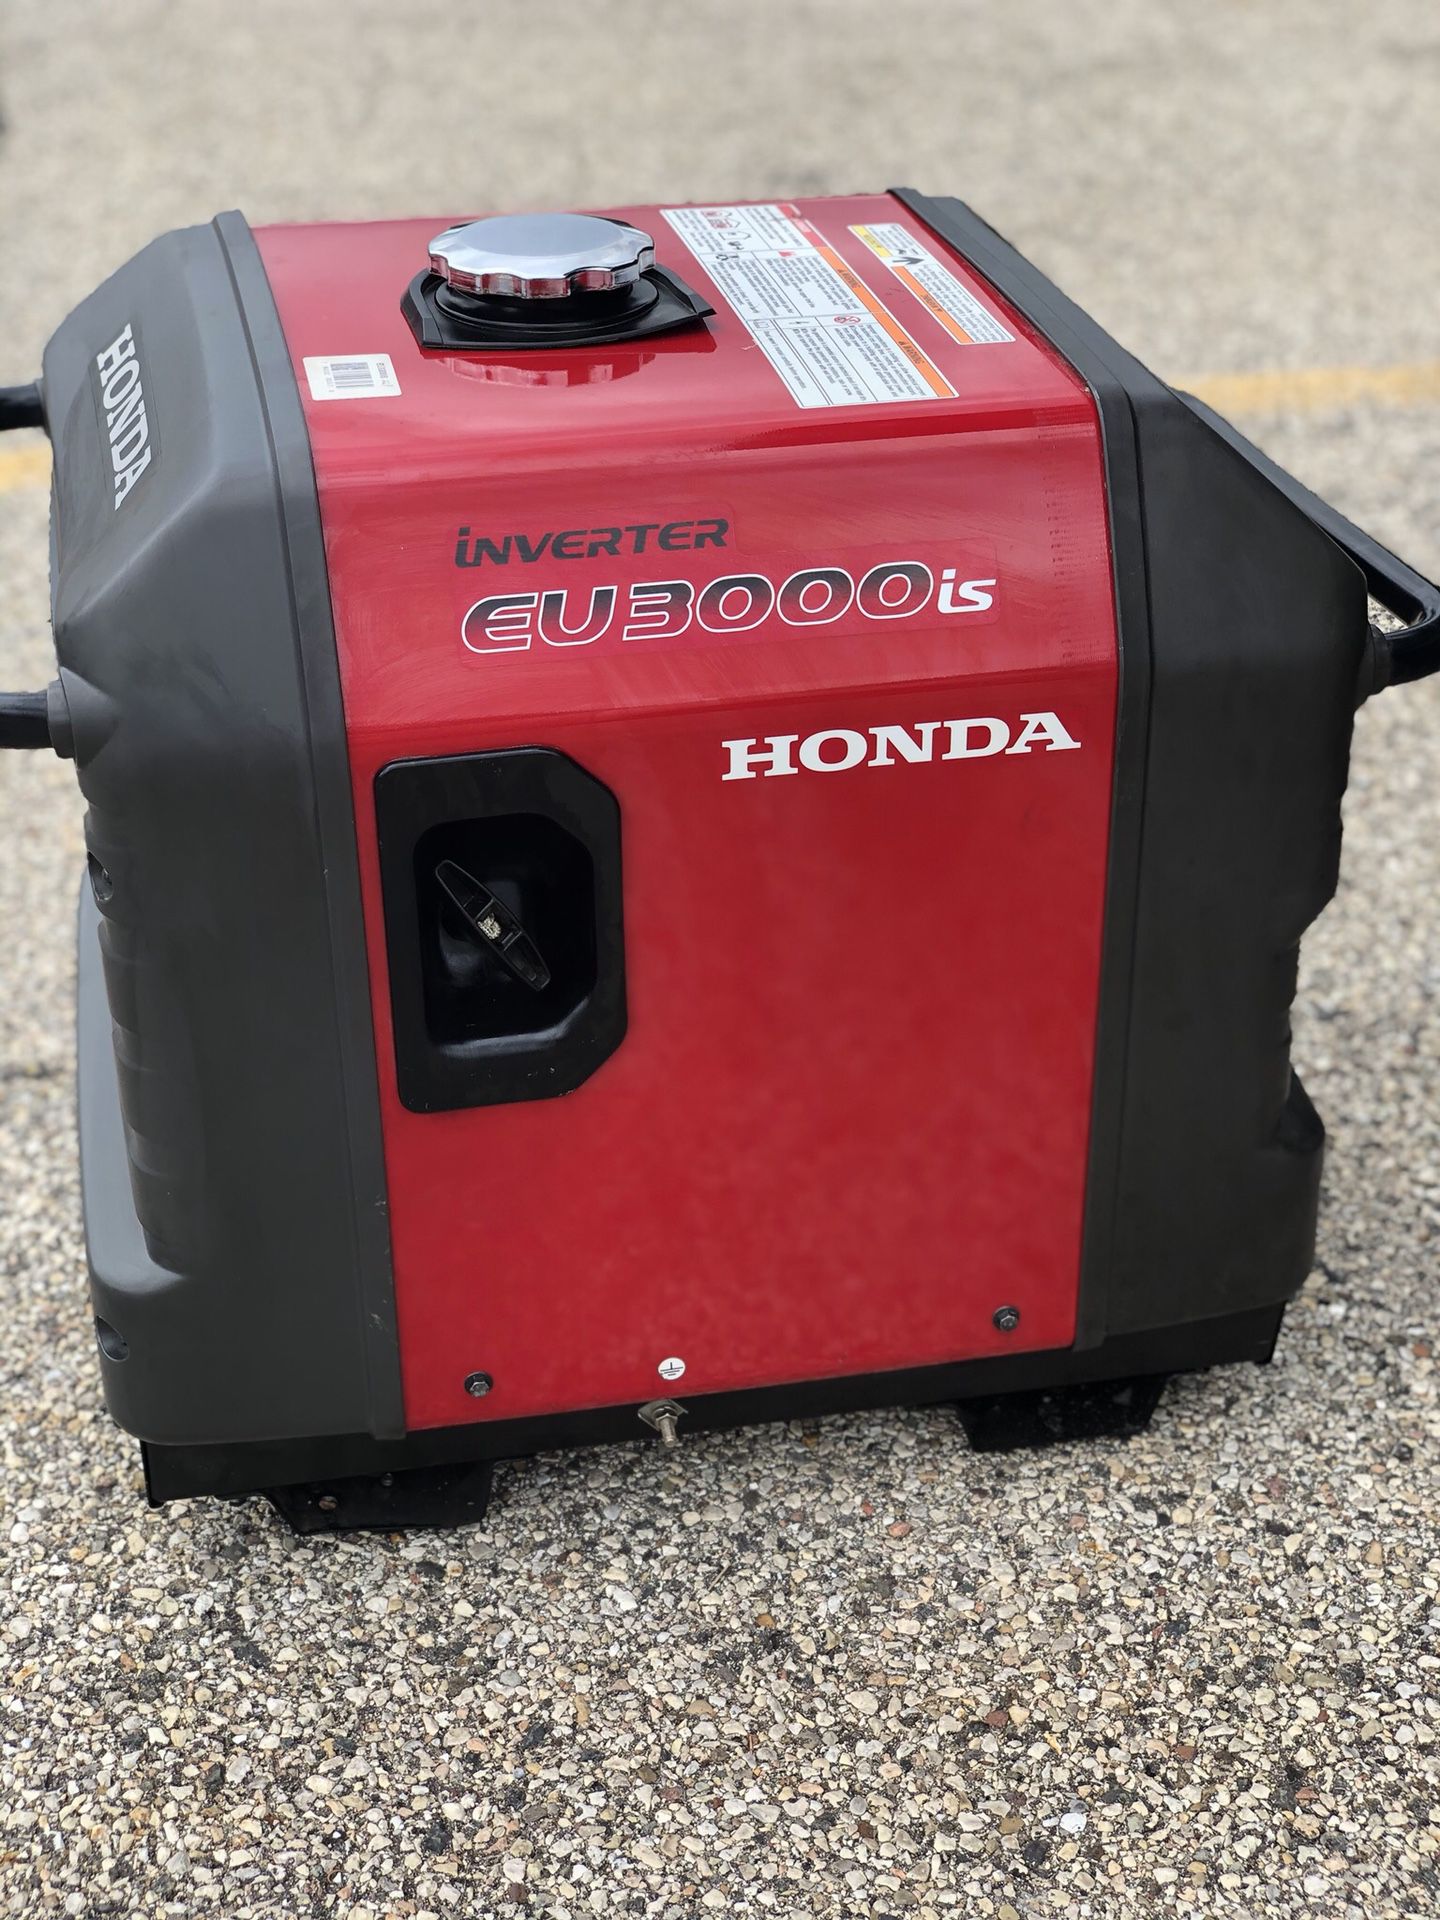 Honda EU3000is generator